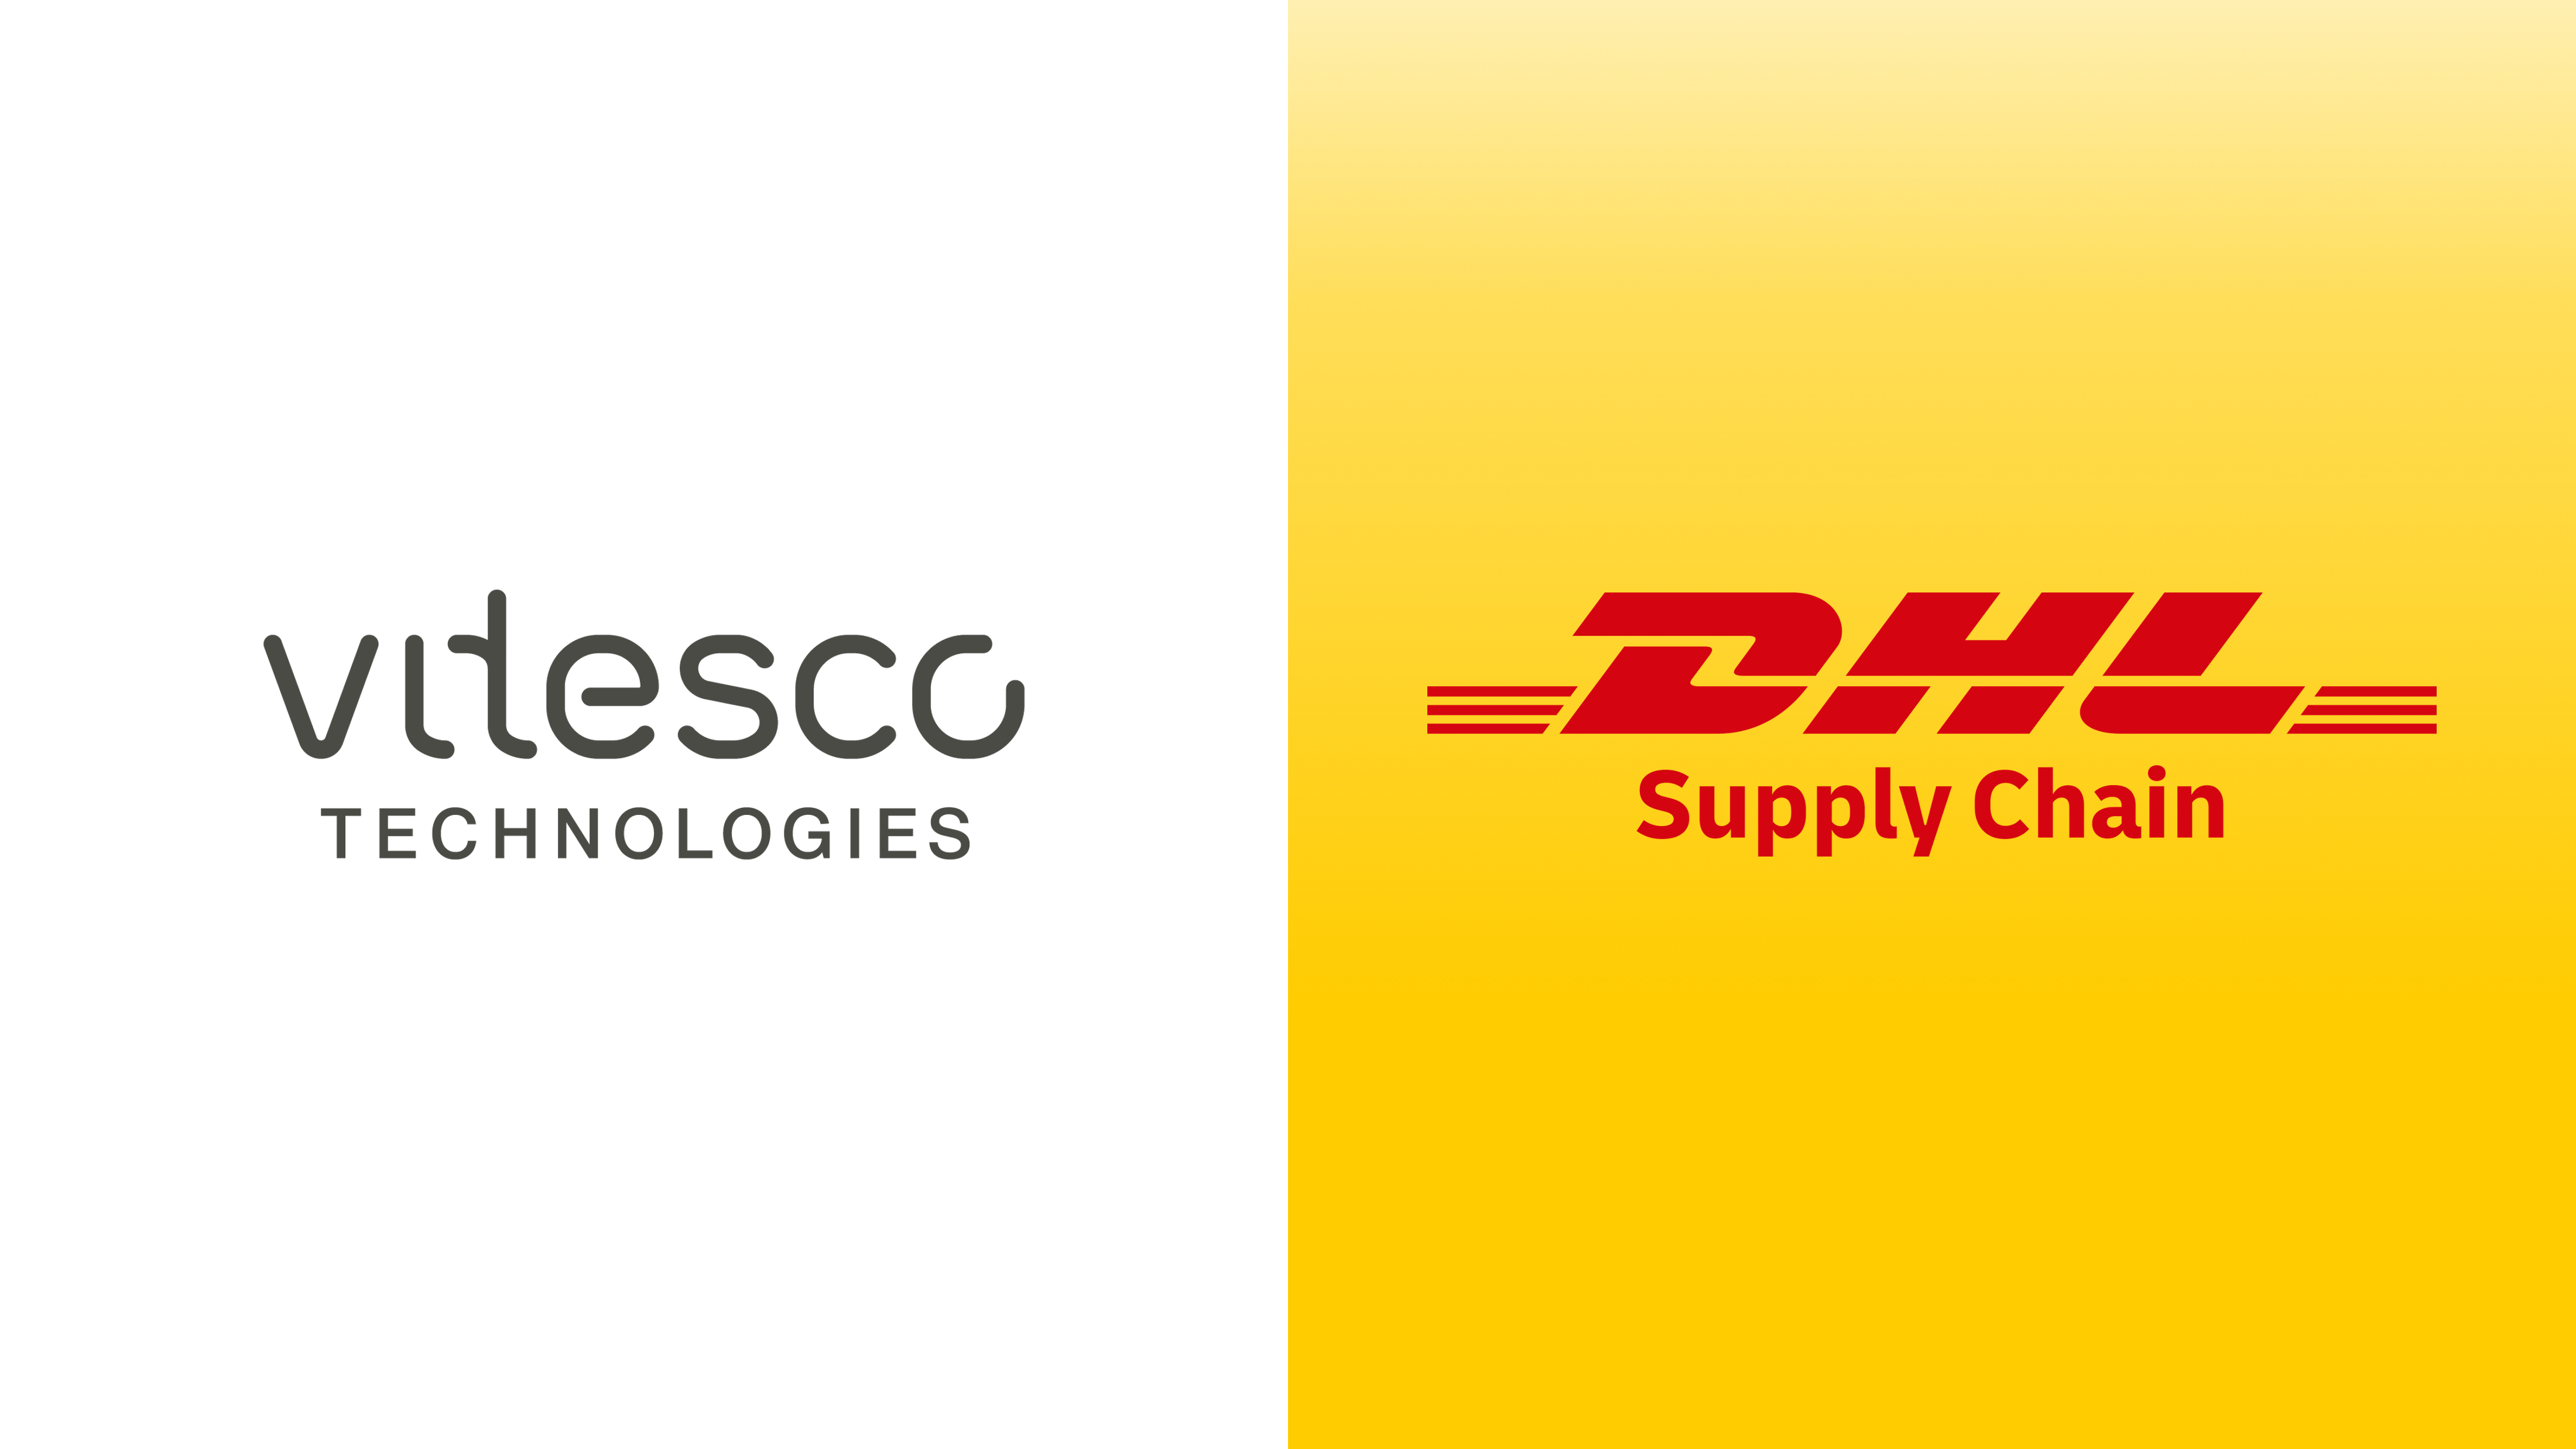 Vitesco Technologies und DHL schließen strategische Partnerschaft